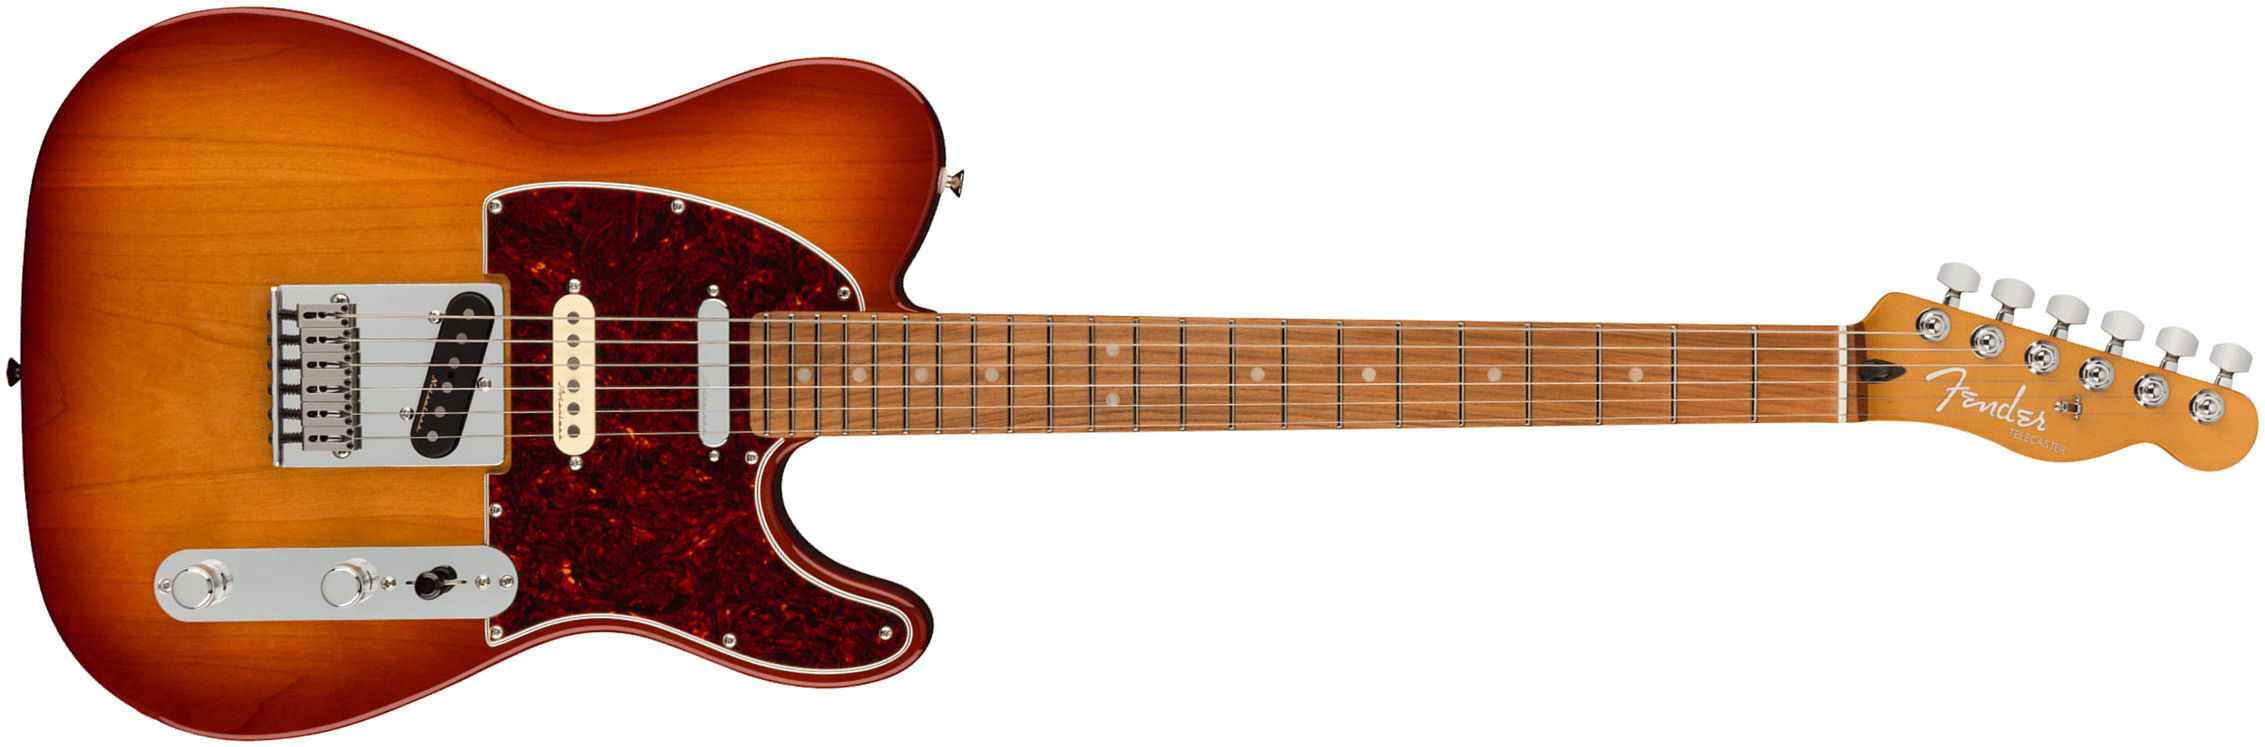 Fender Tele Player Plus Nashville Mex 2023 2s Ht Pf - Sienna Sunburst - Tel shape electric guitar - Main picture